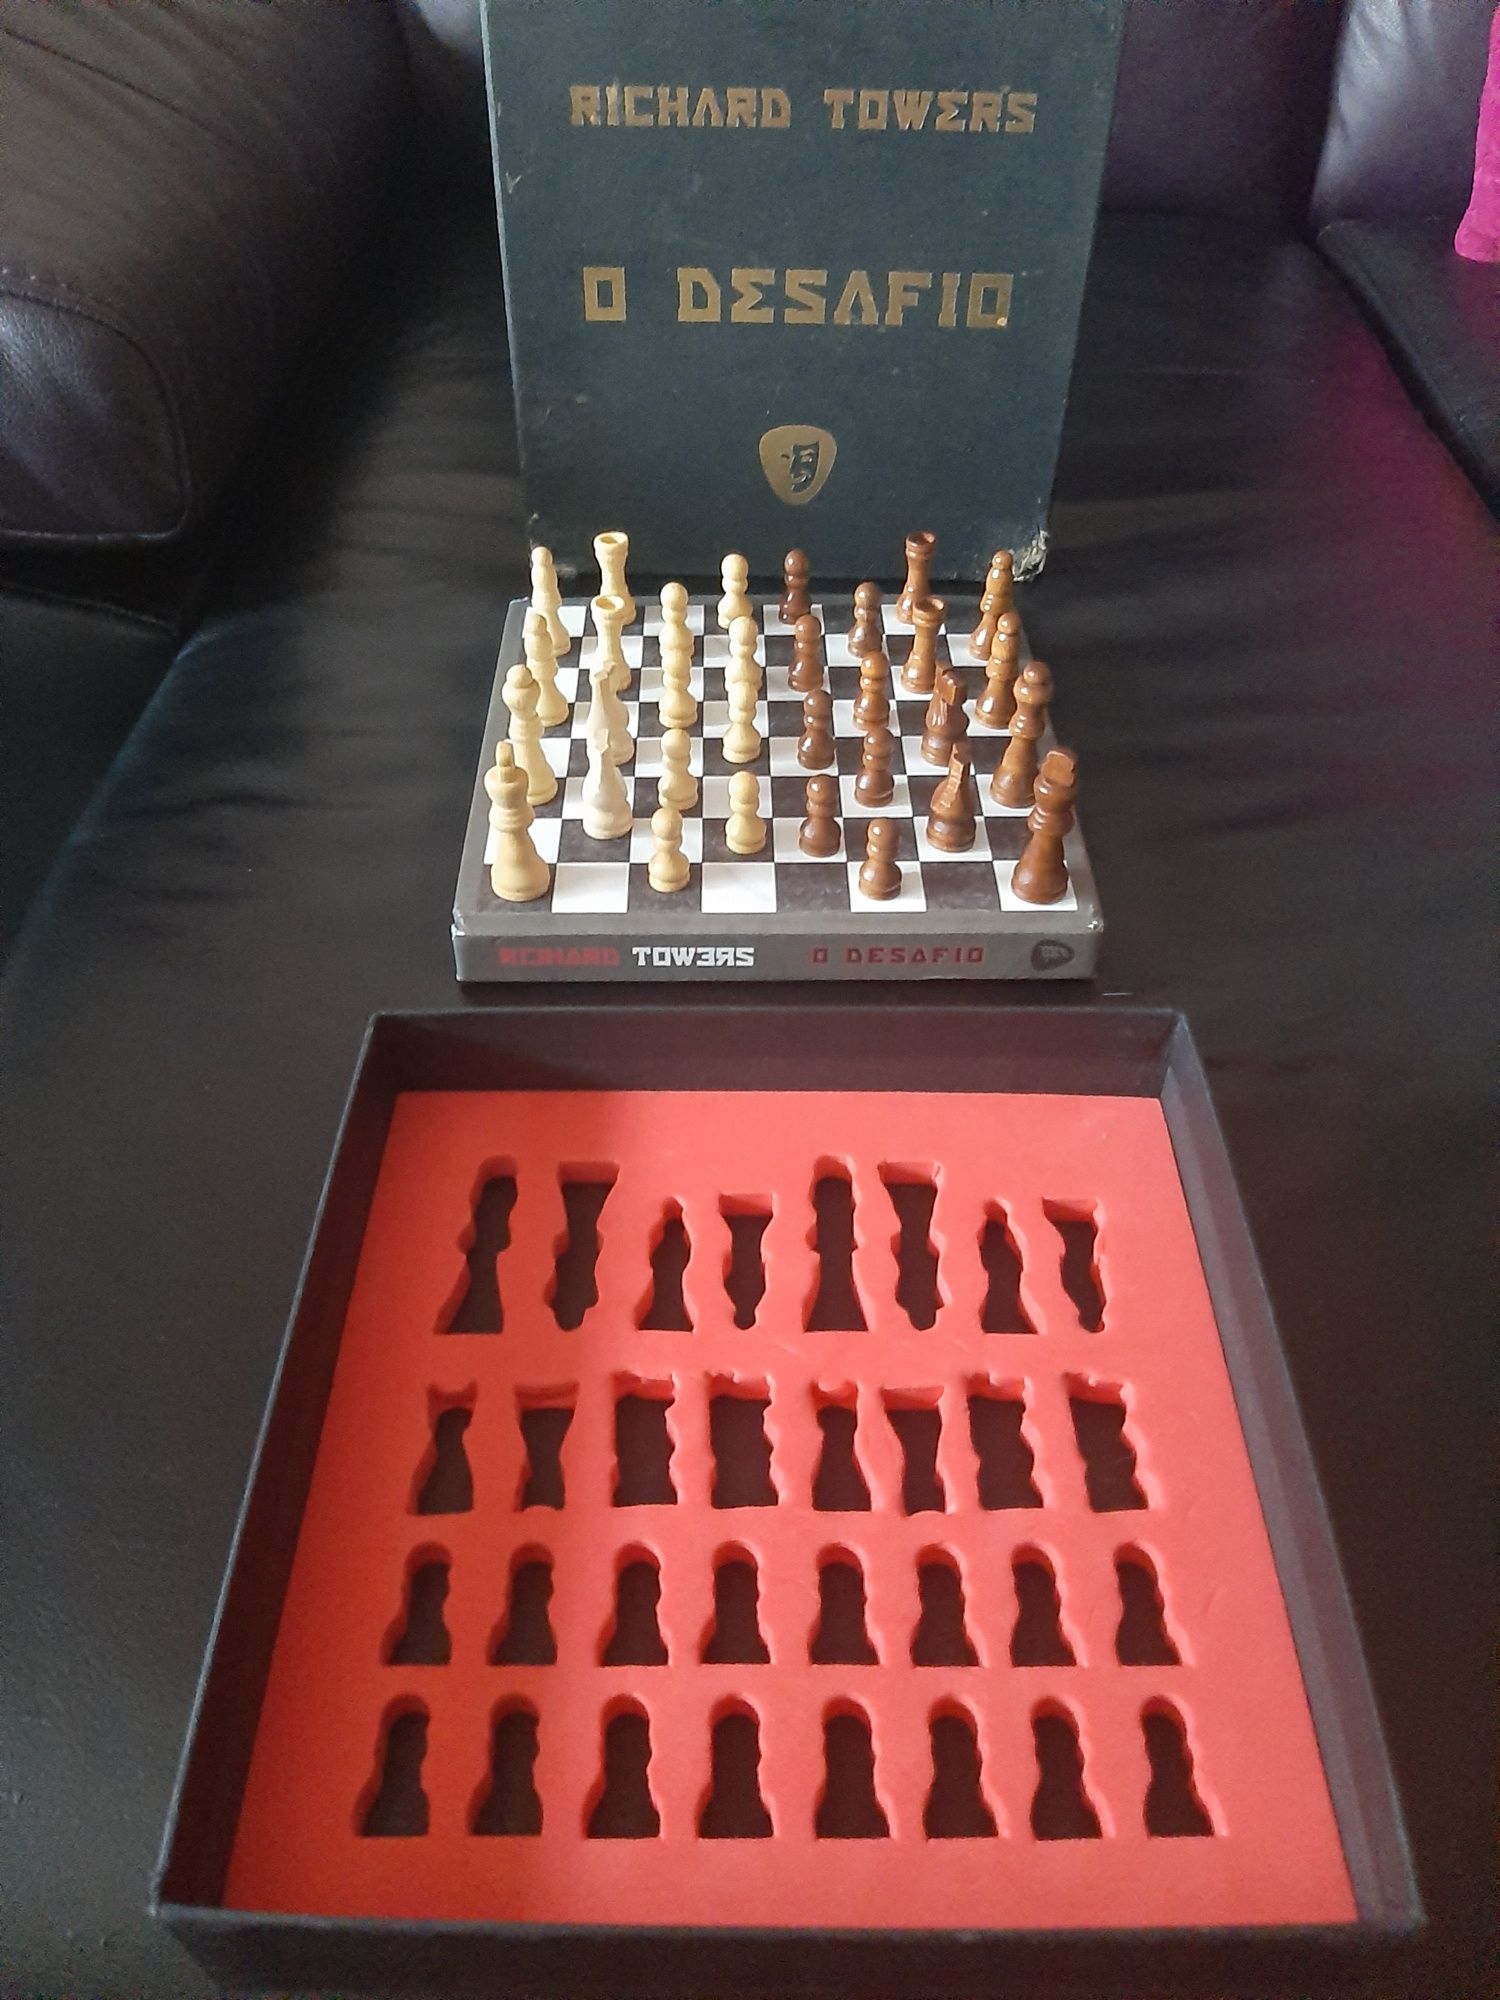 baralho cartas coca-cola vintage richard towers desafio xadrez